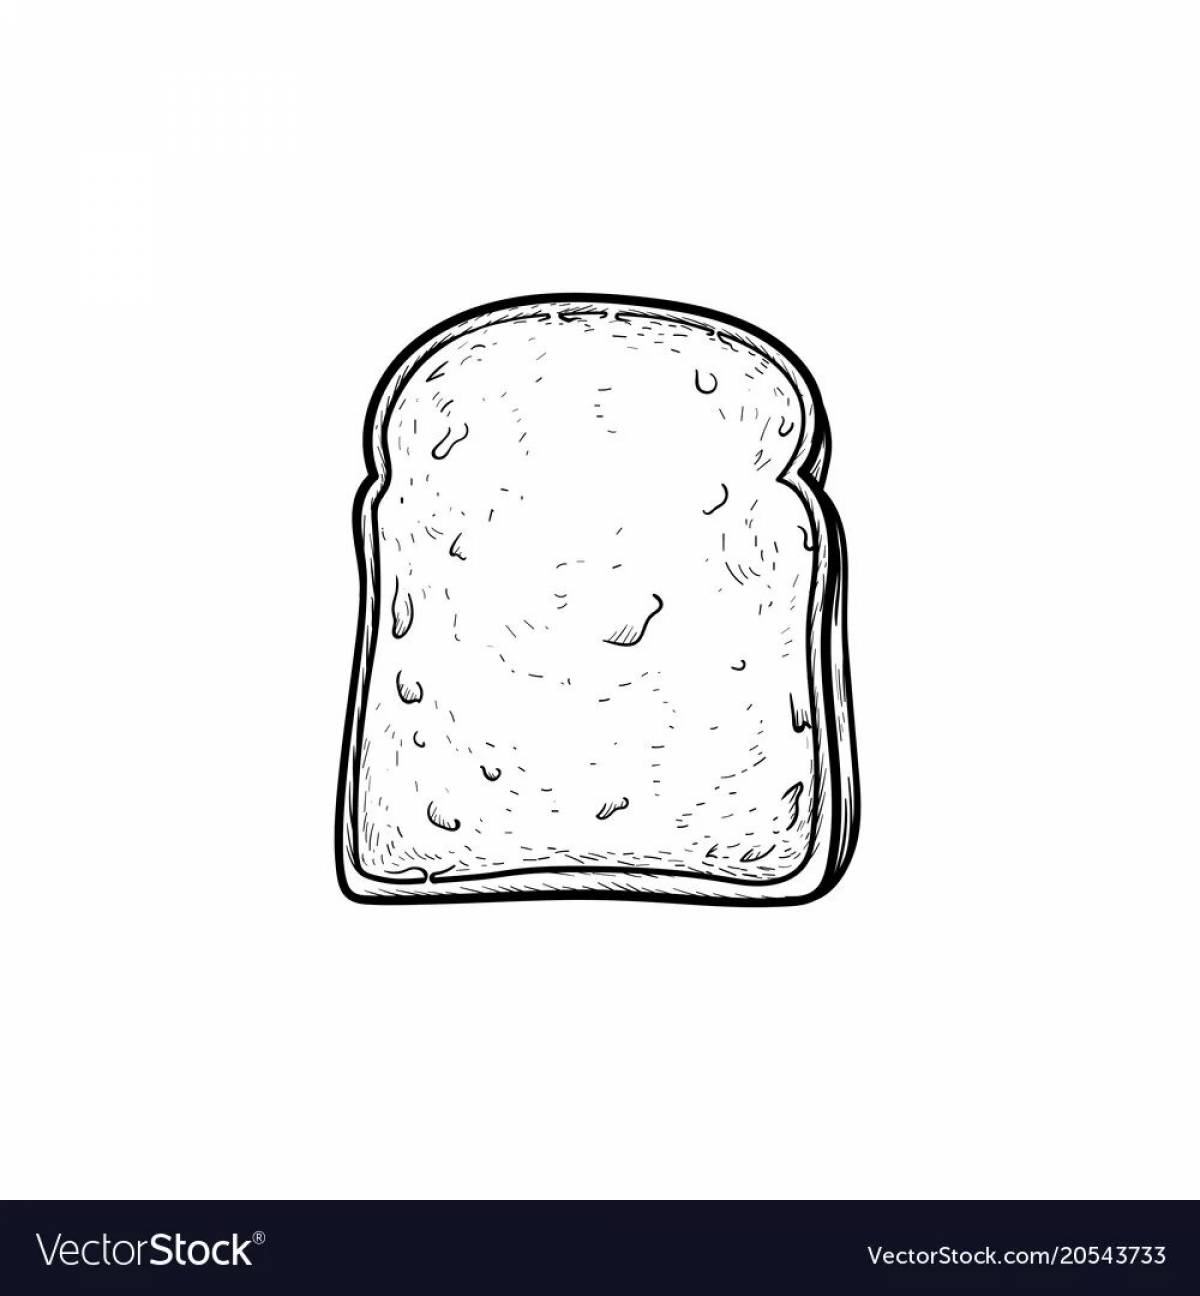 Toast #16